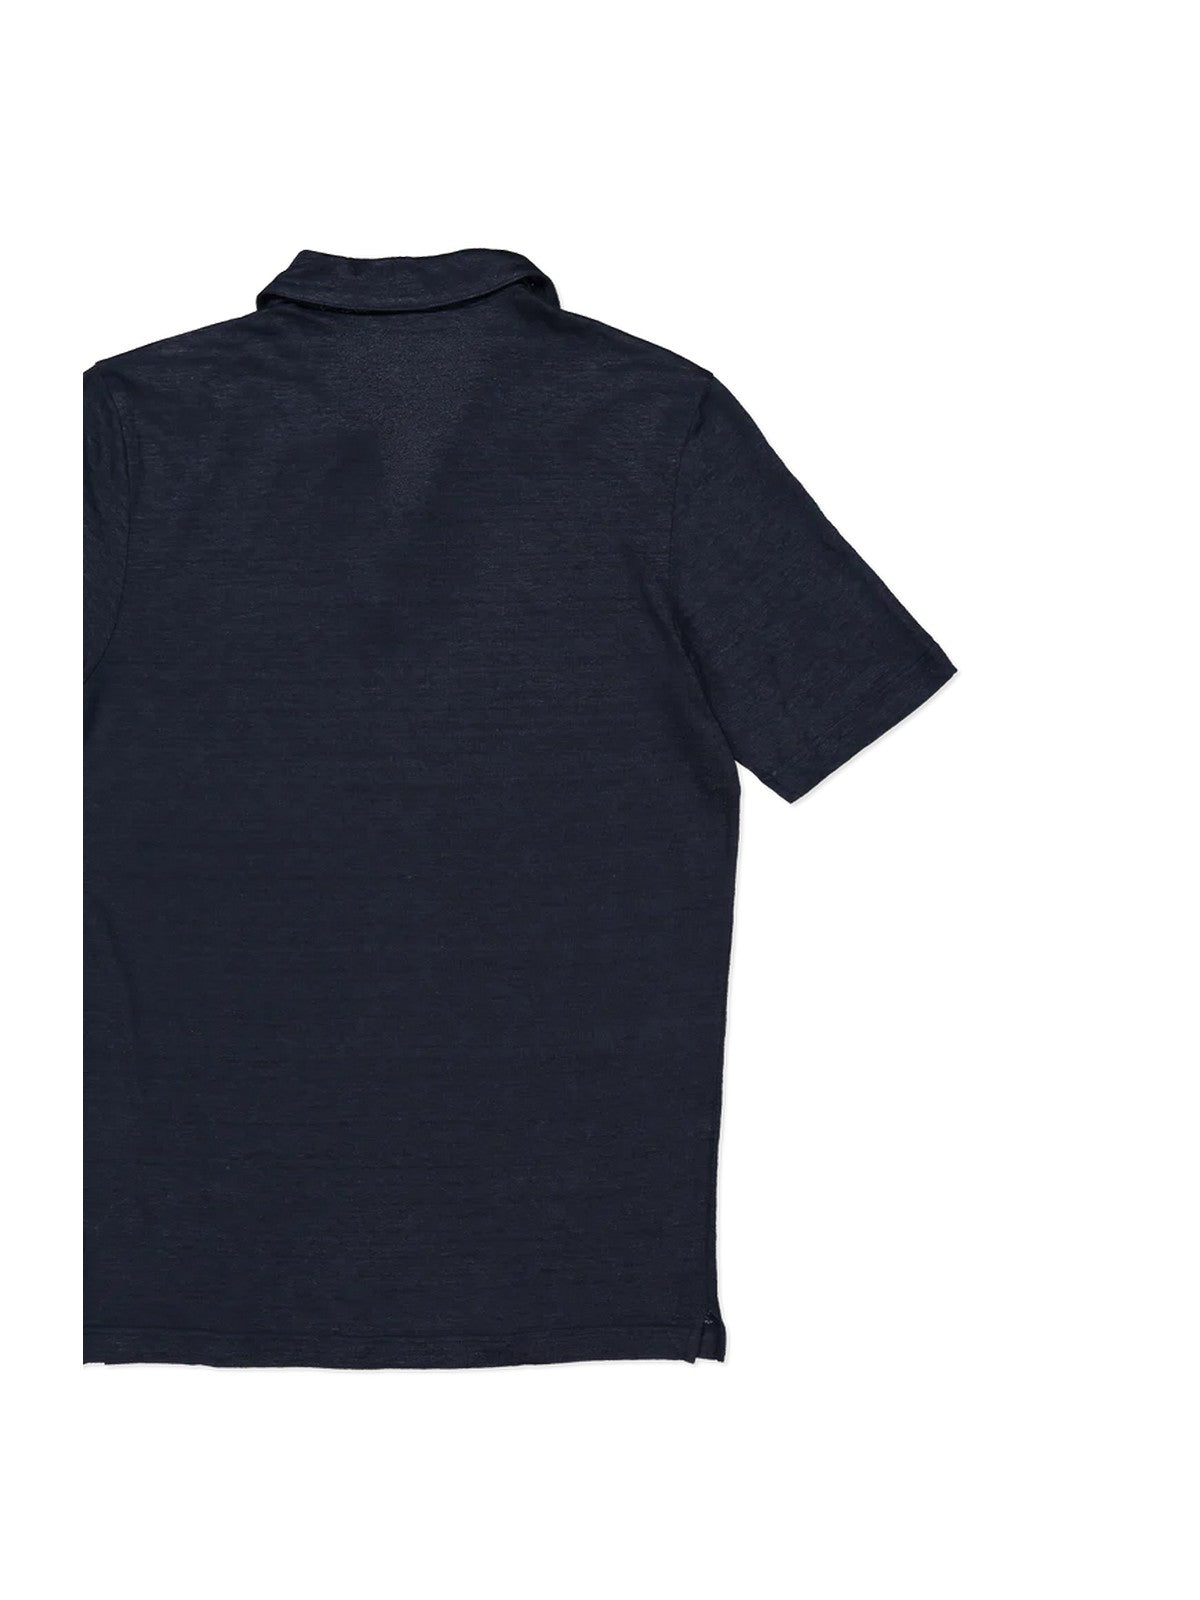 GRAN SASSO T-Shirt e Polo Uomo  60160/96800 306 Blu